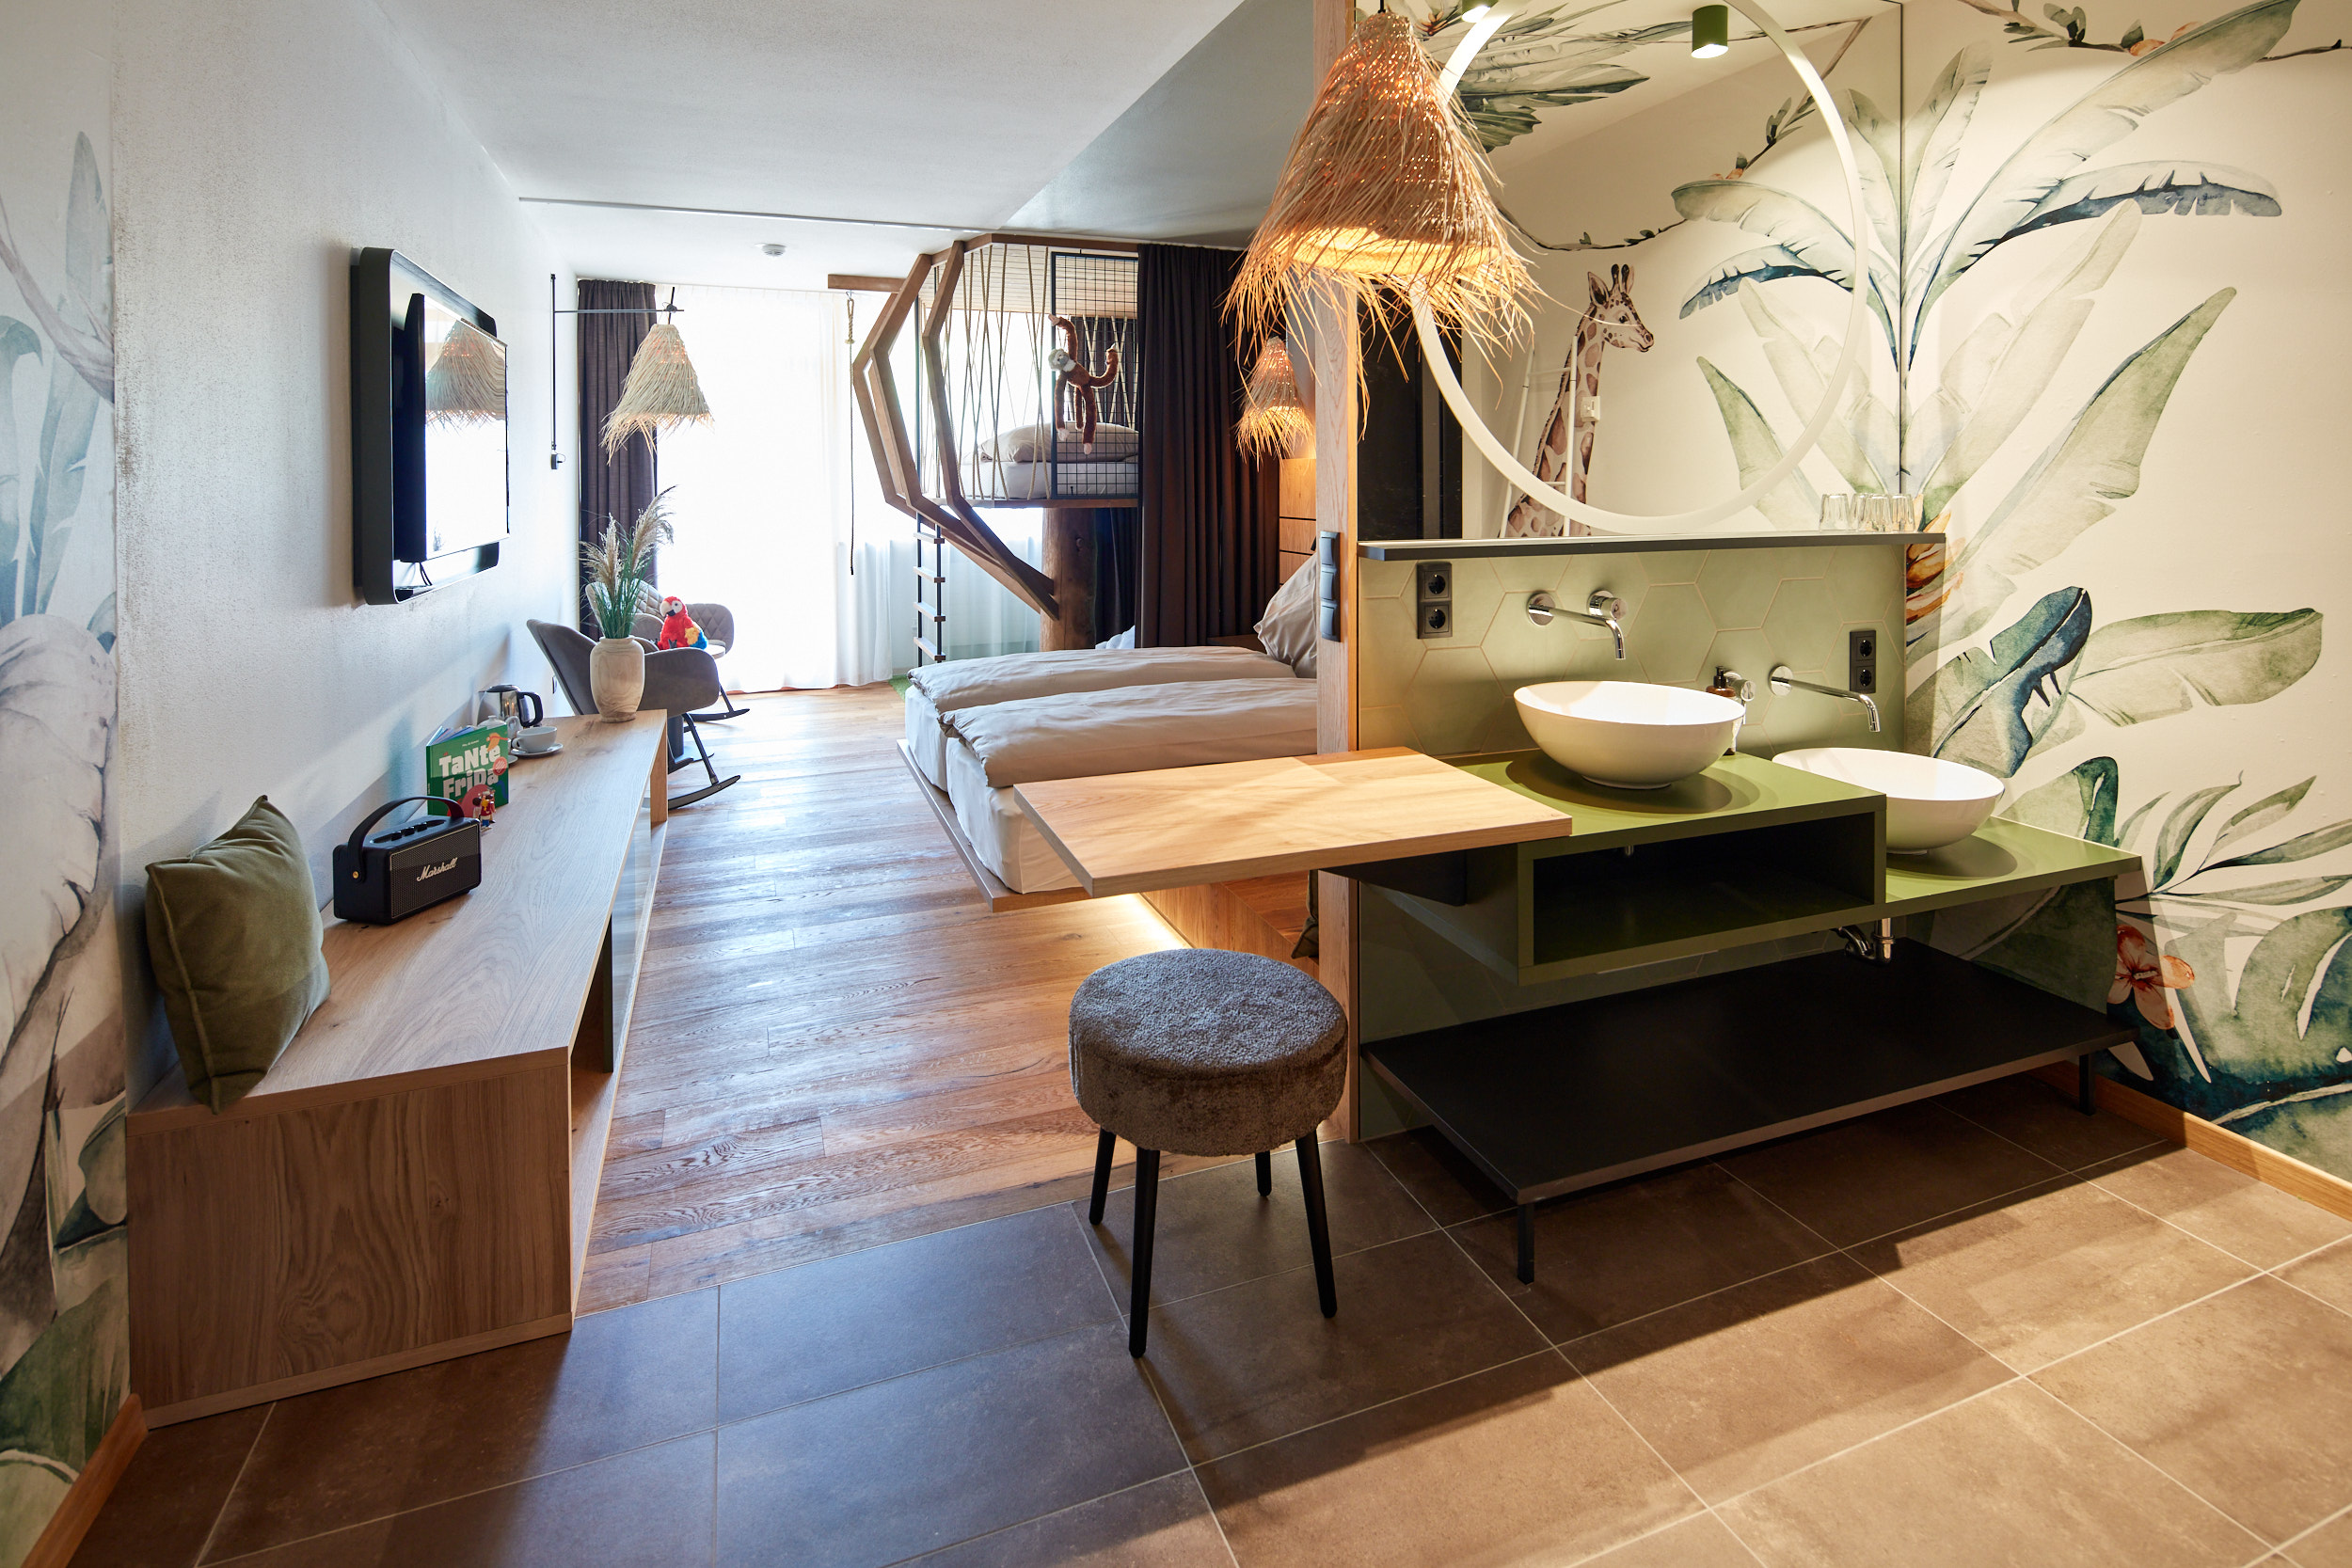 Hotel TaNte FriDa Dschungel Zimmer mit Blick ins Bad und Schlafbereich 1 ©Eder Hotels GmbH